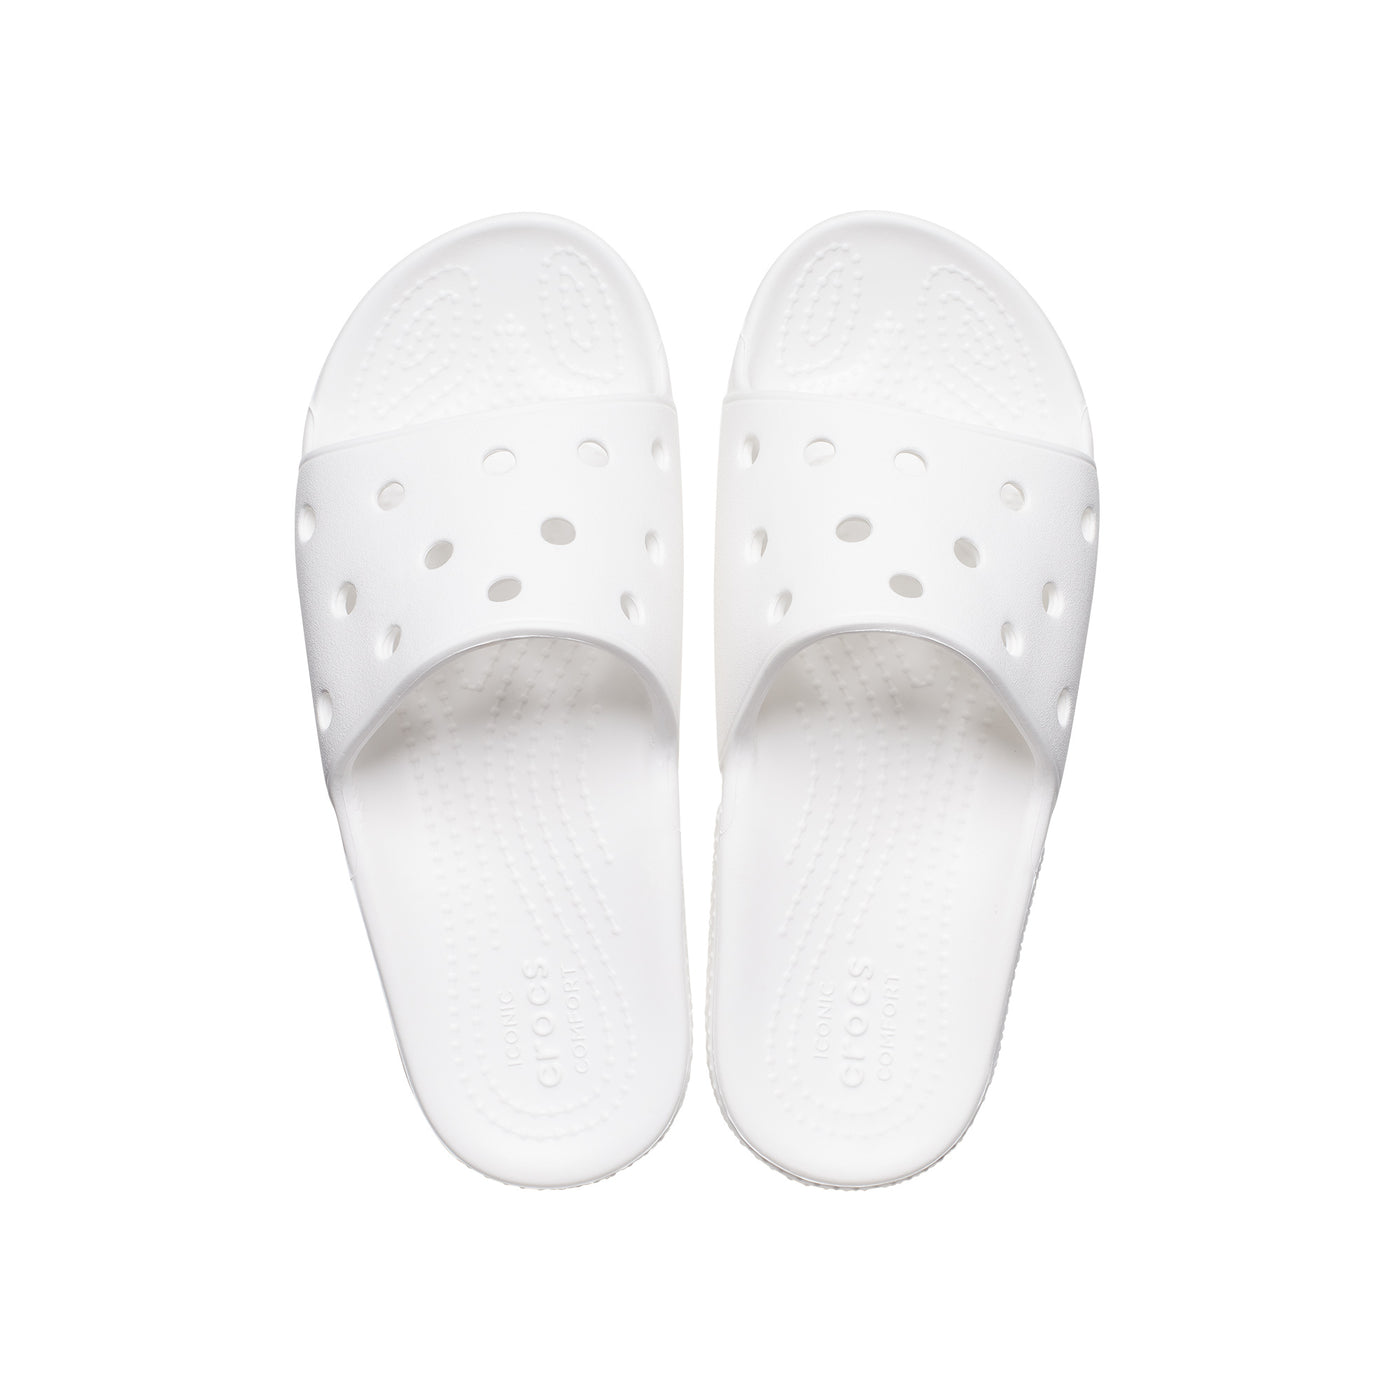 Dép Quai Ngang Trẻ Em Crocs Classic - White